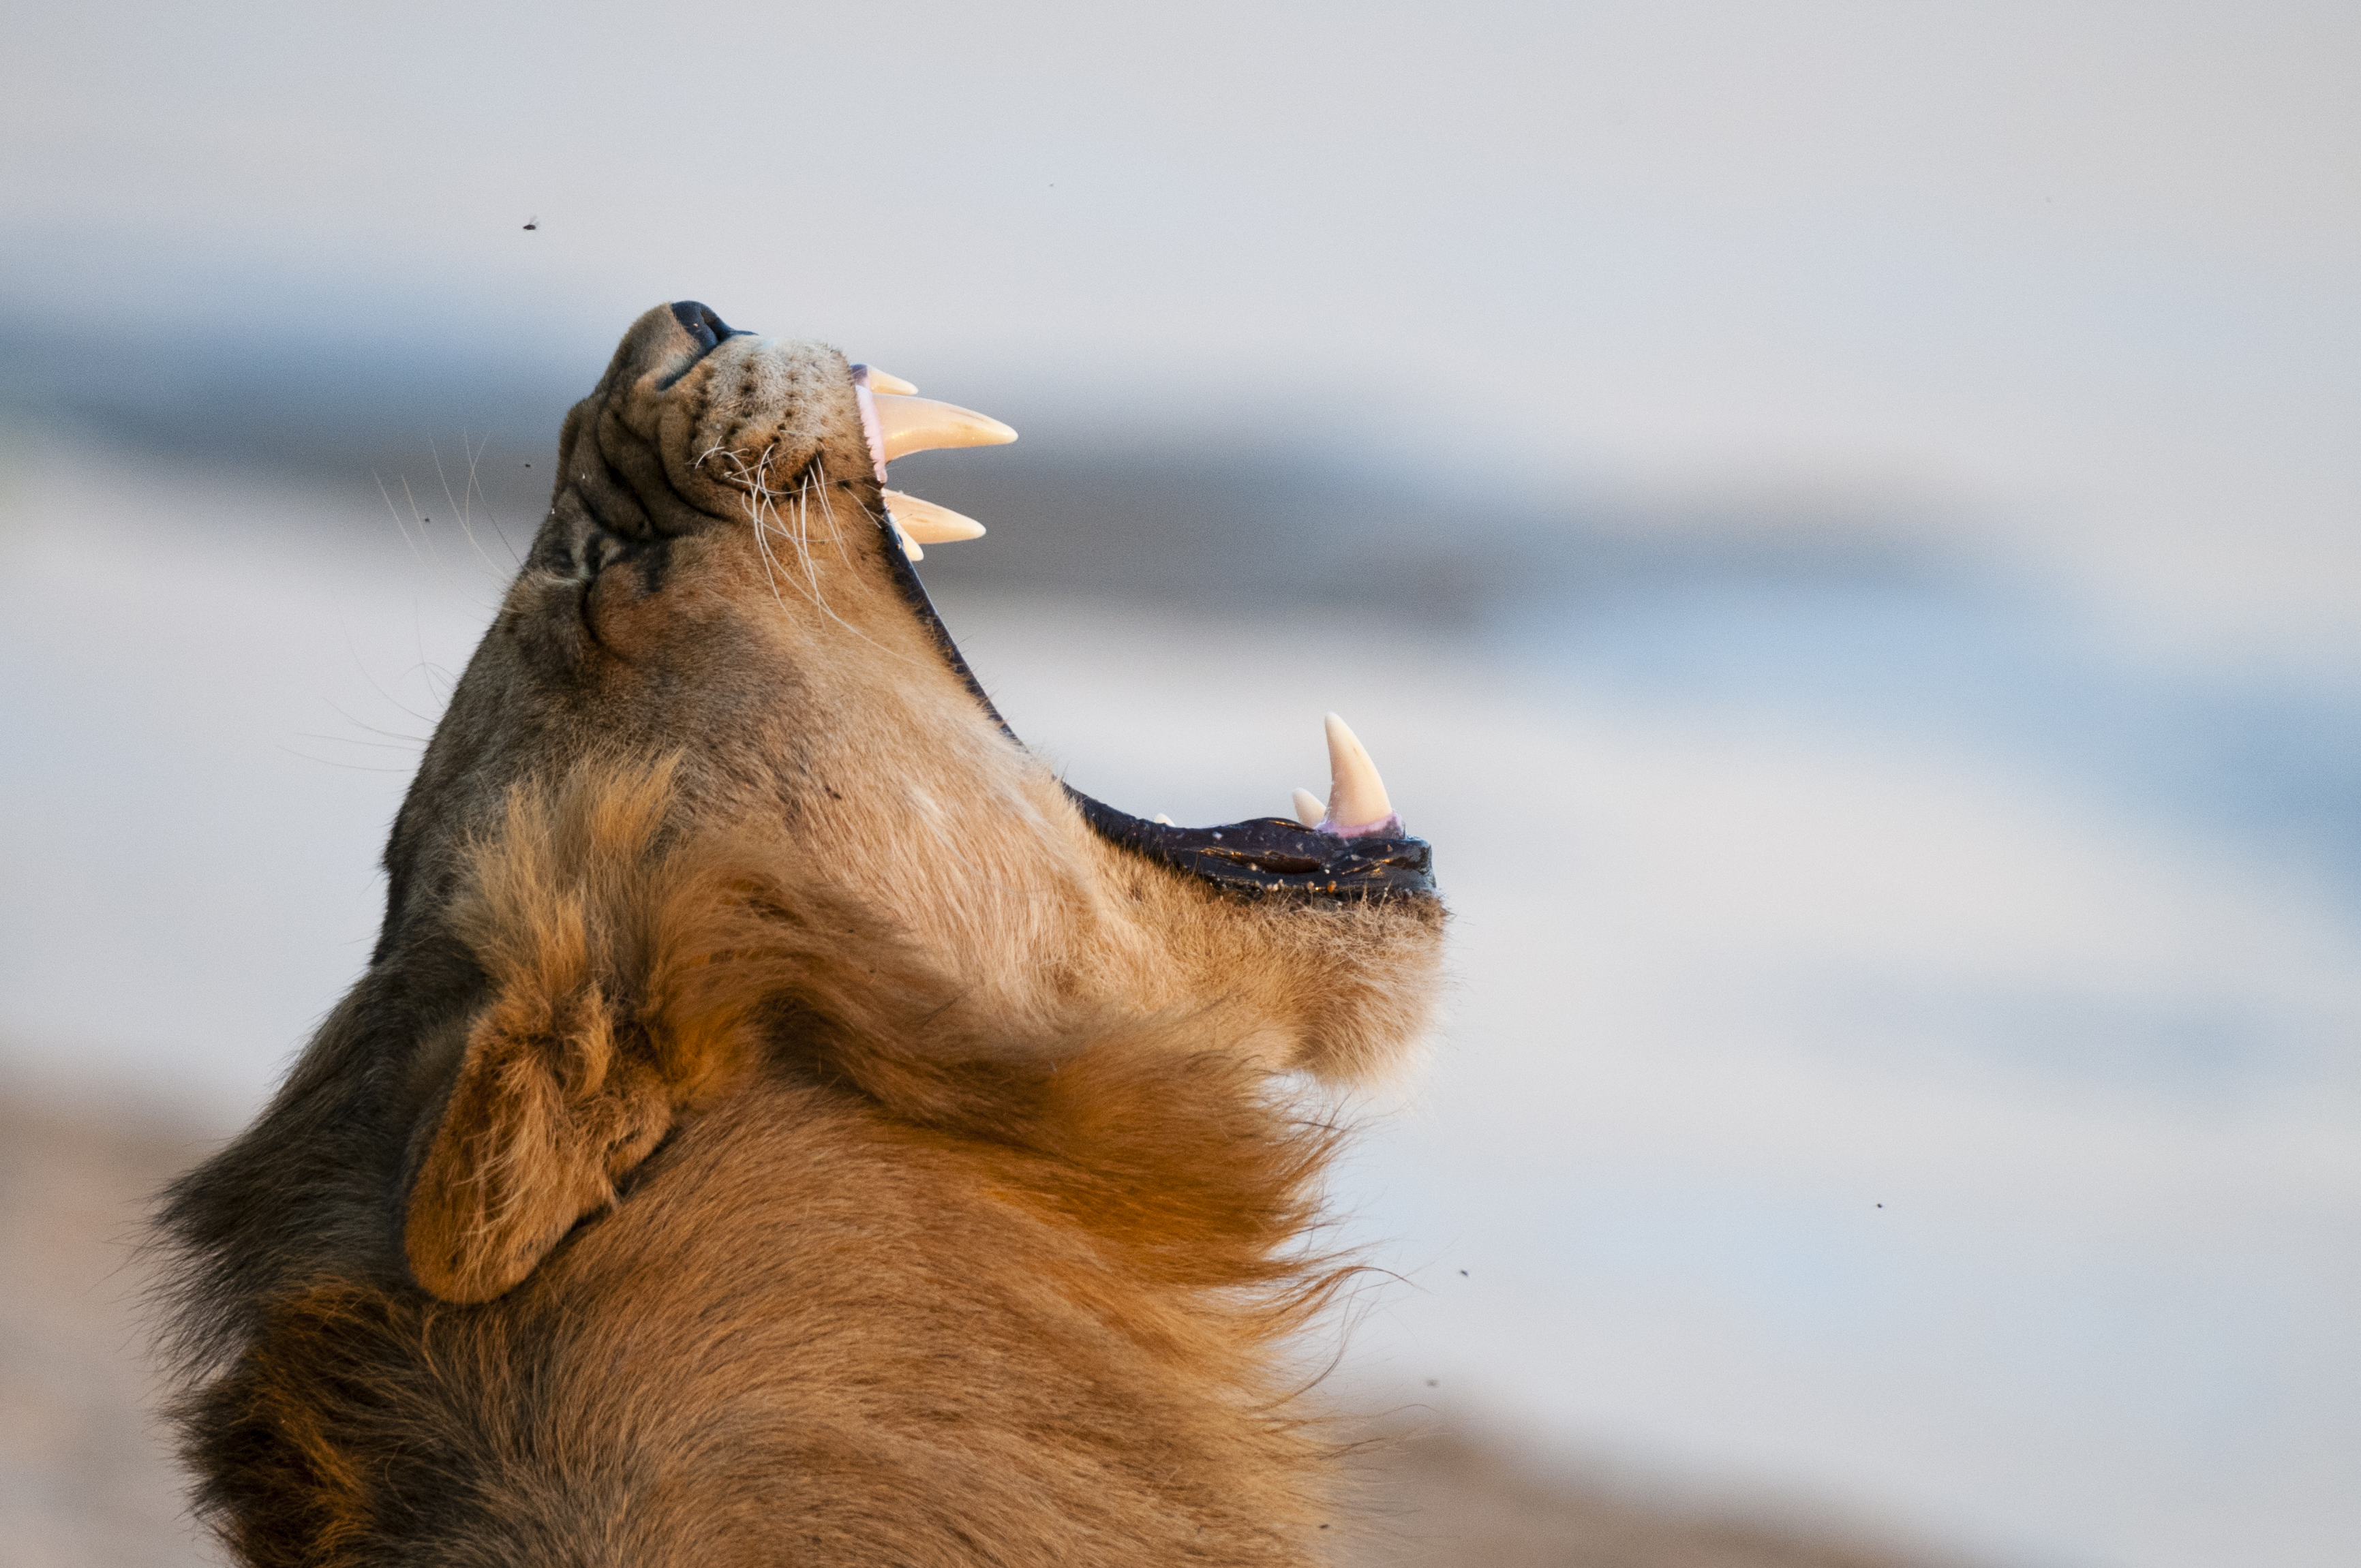 "A lion, Panthera leo, yawning."